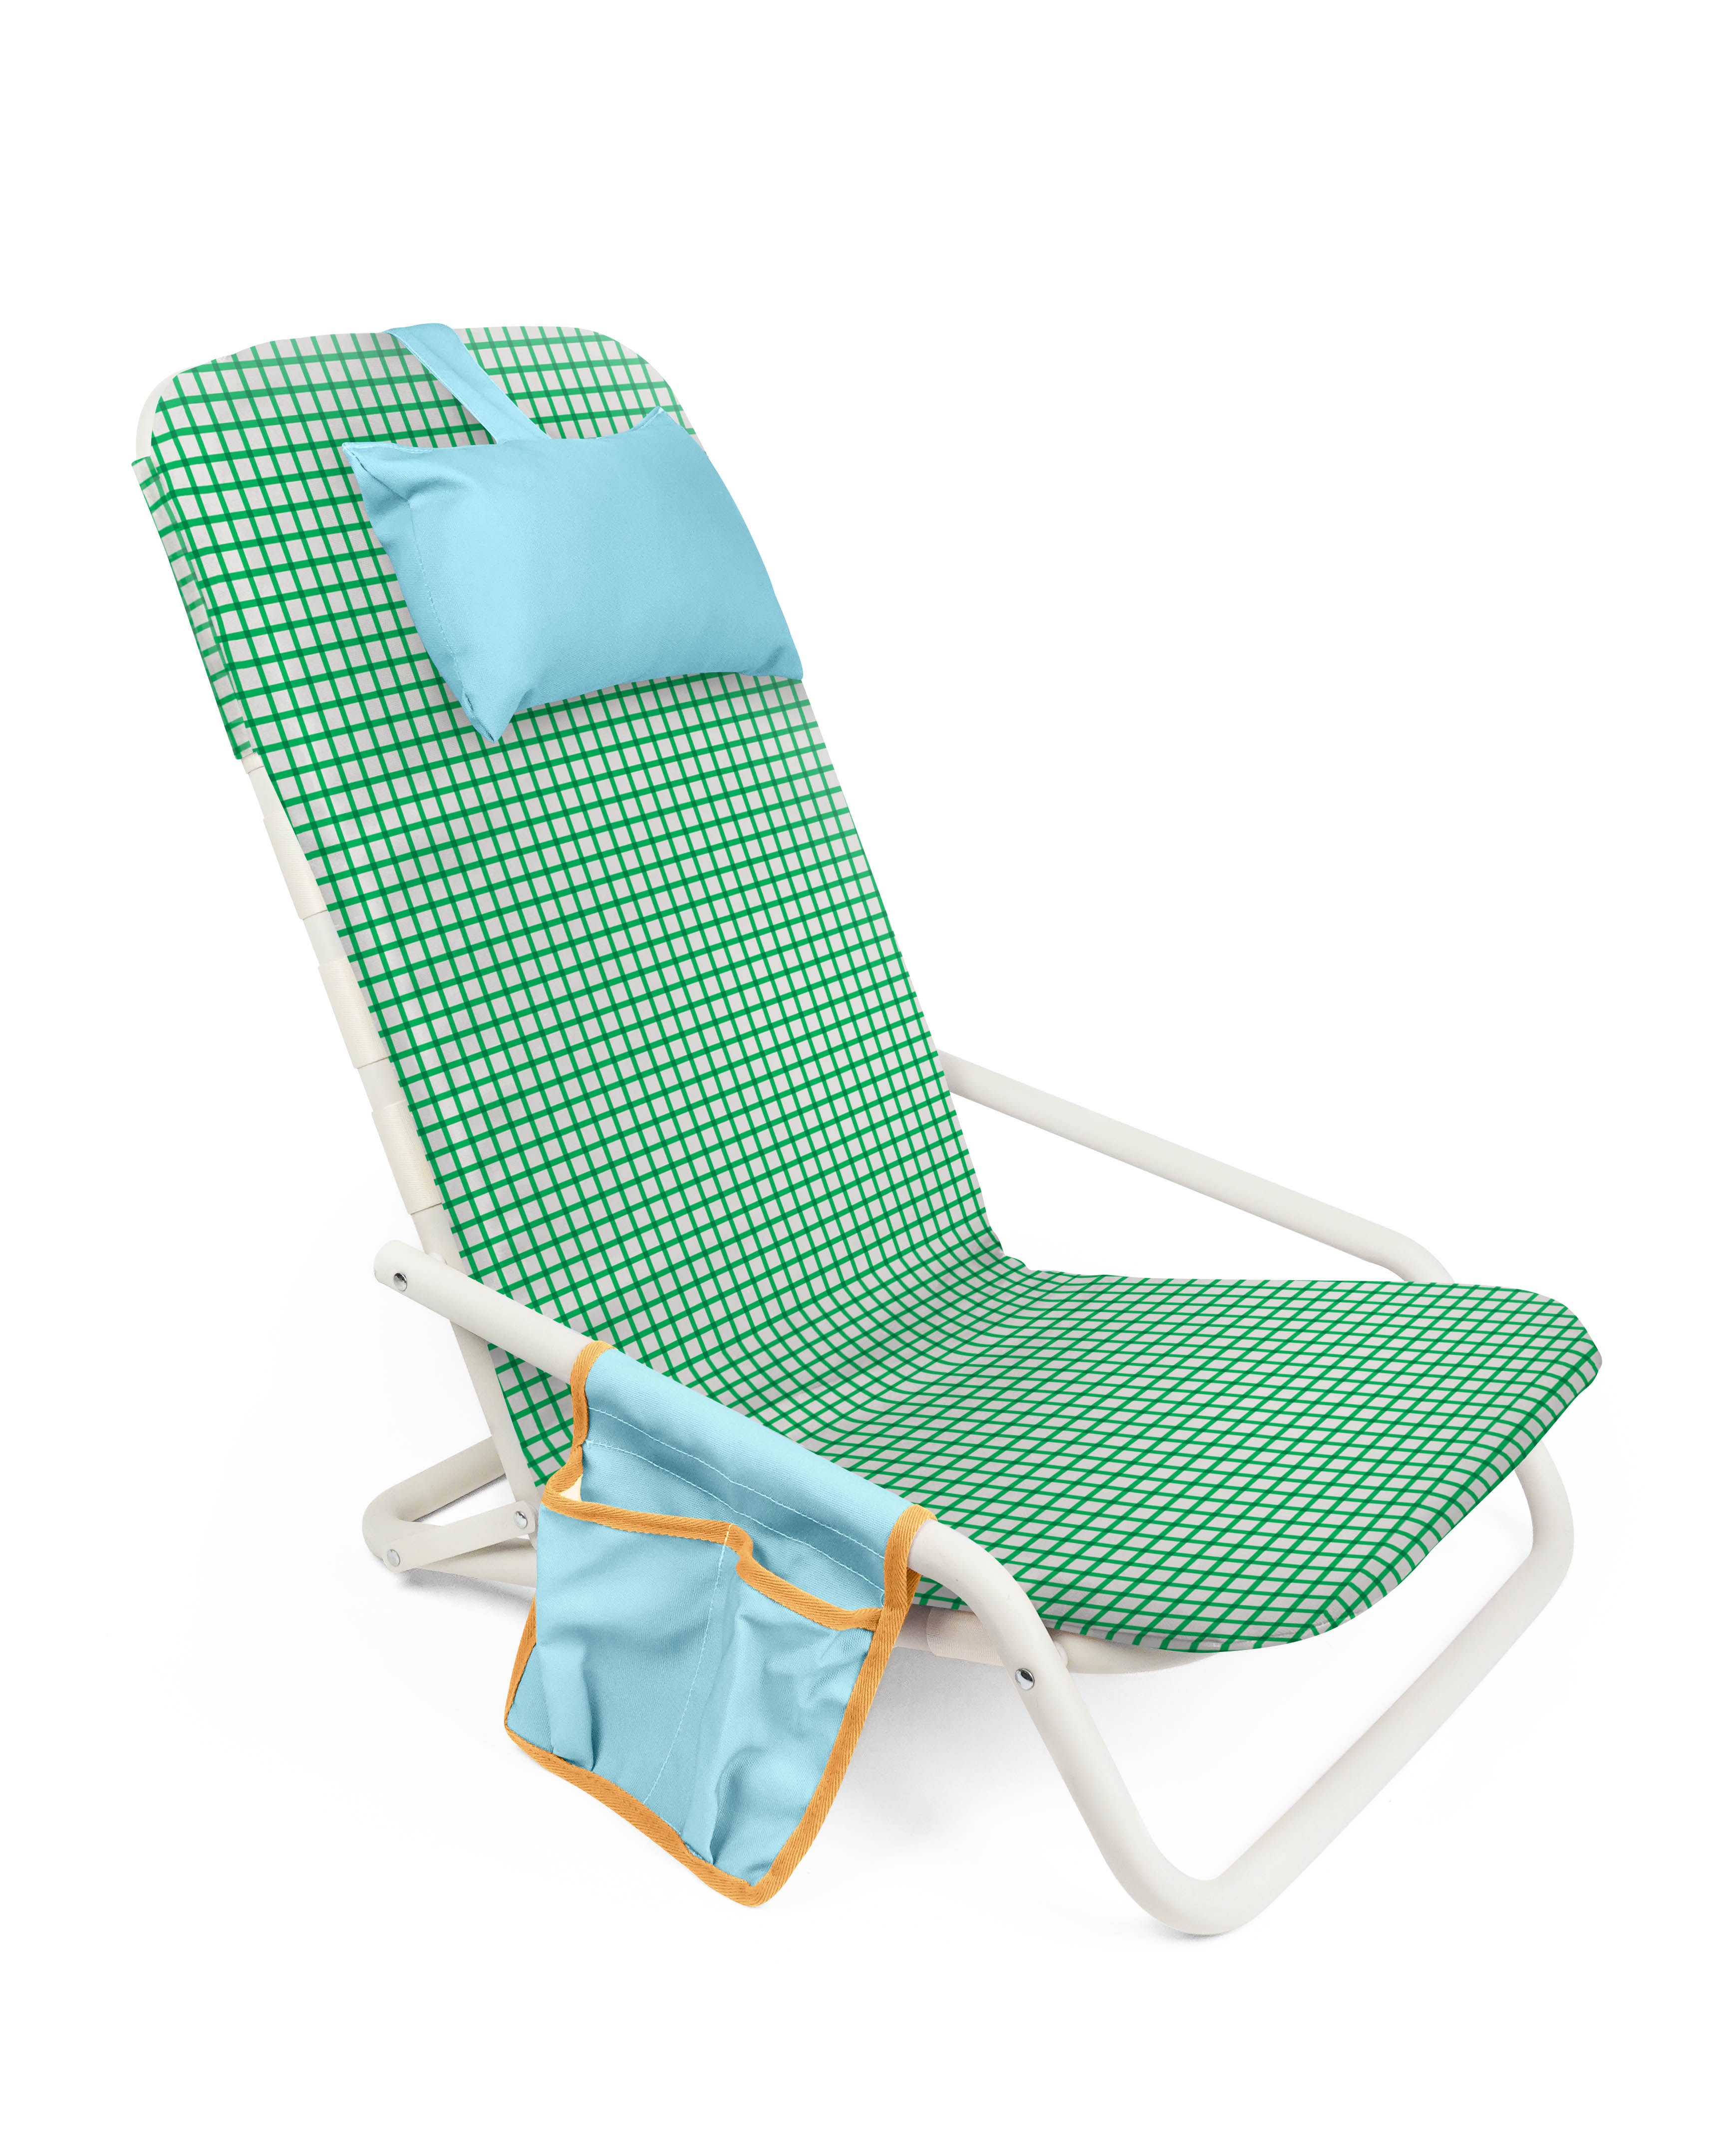 Marseille Beach Chair